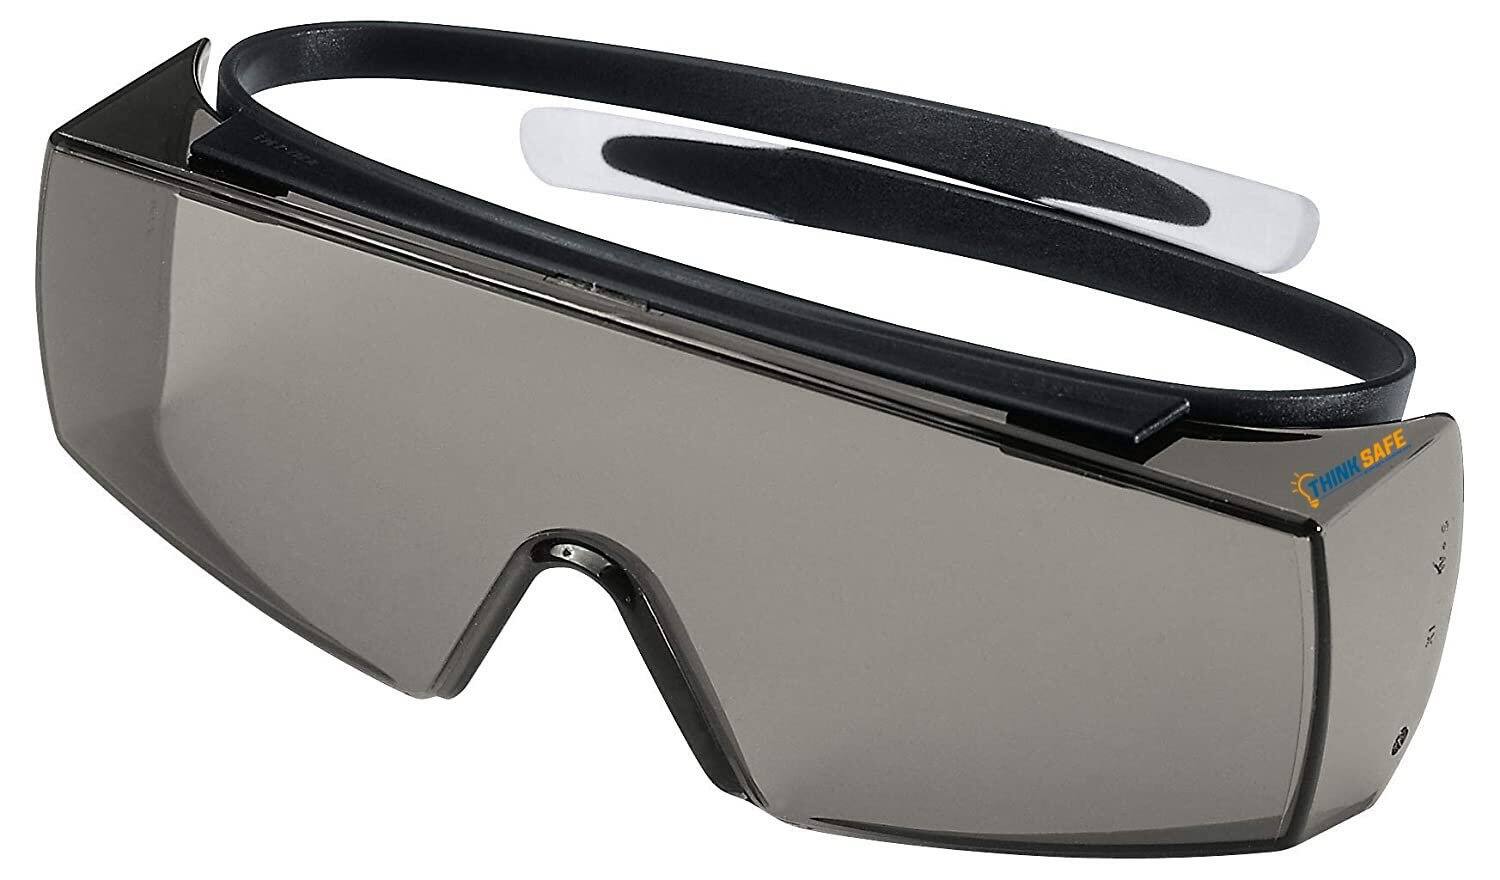 Kính bảo hộ Uvex Super OTG kính chống bụi có thể đeo cùng kính cận, chống hơi nước, ngăn chặn tia UV (màu đen), mã 9169081